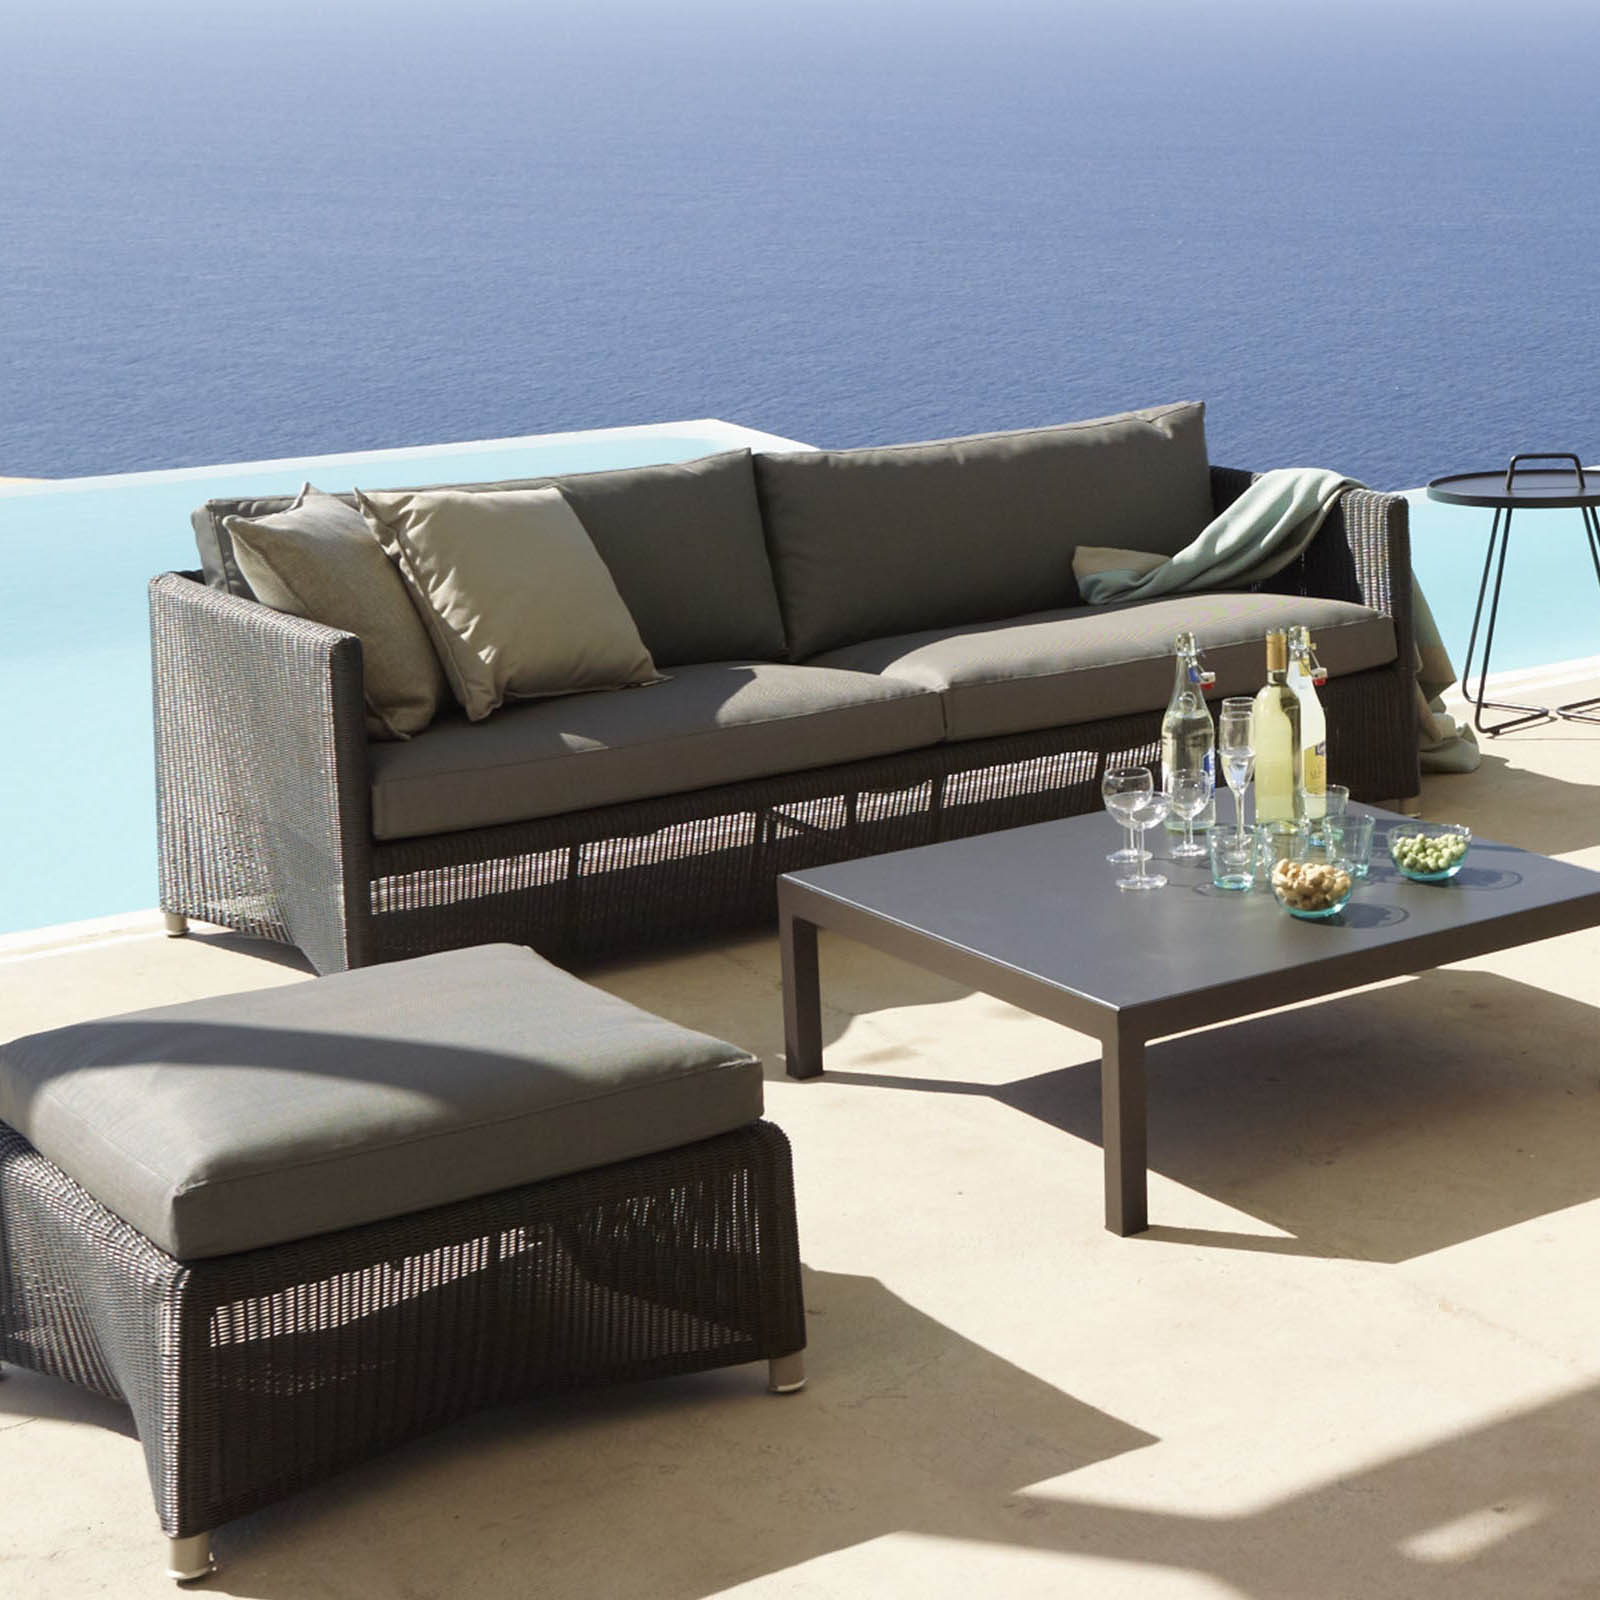 Diamond 3-Sitzer Sofa aus Cane-line Weave in Graphite mit Kissen aus Cane-line Natté in Grey